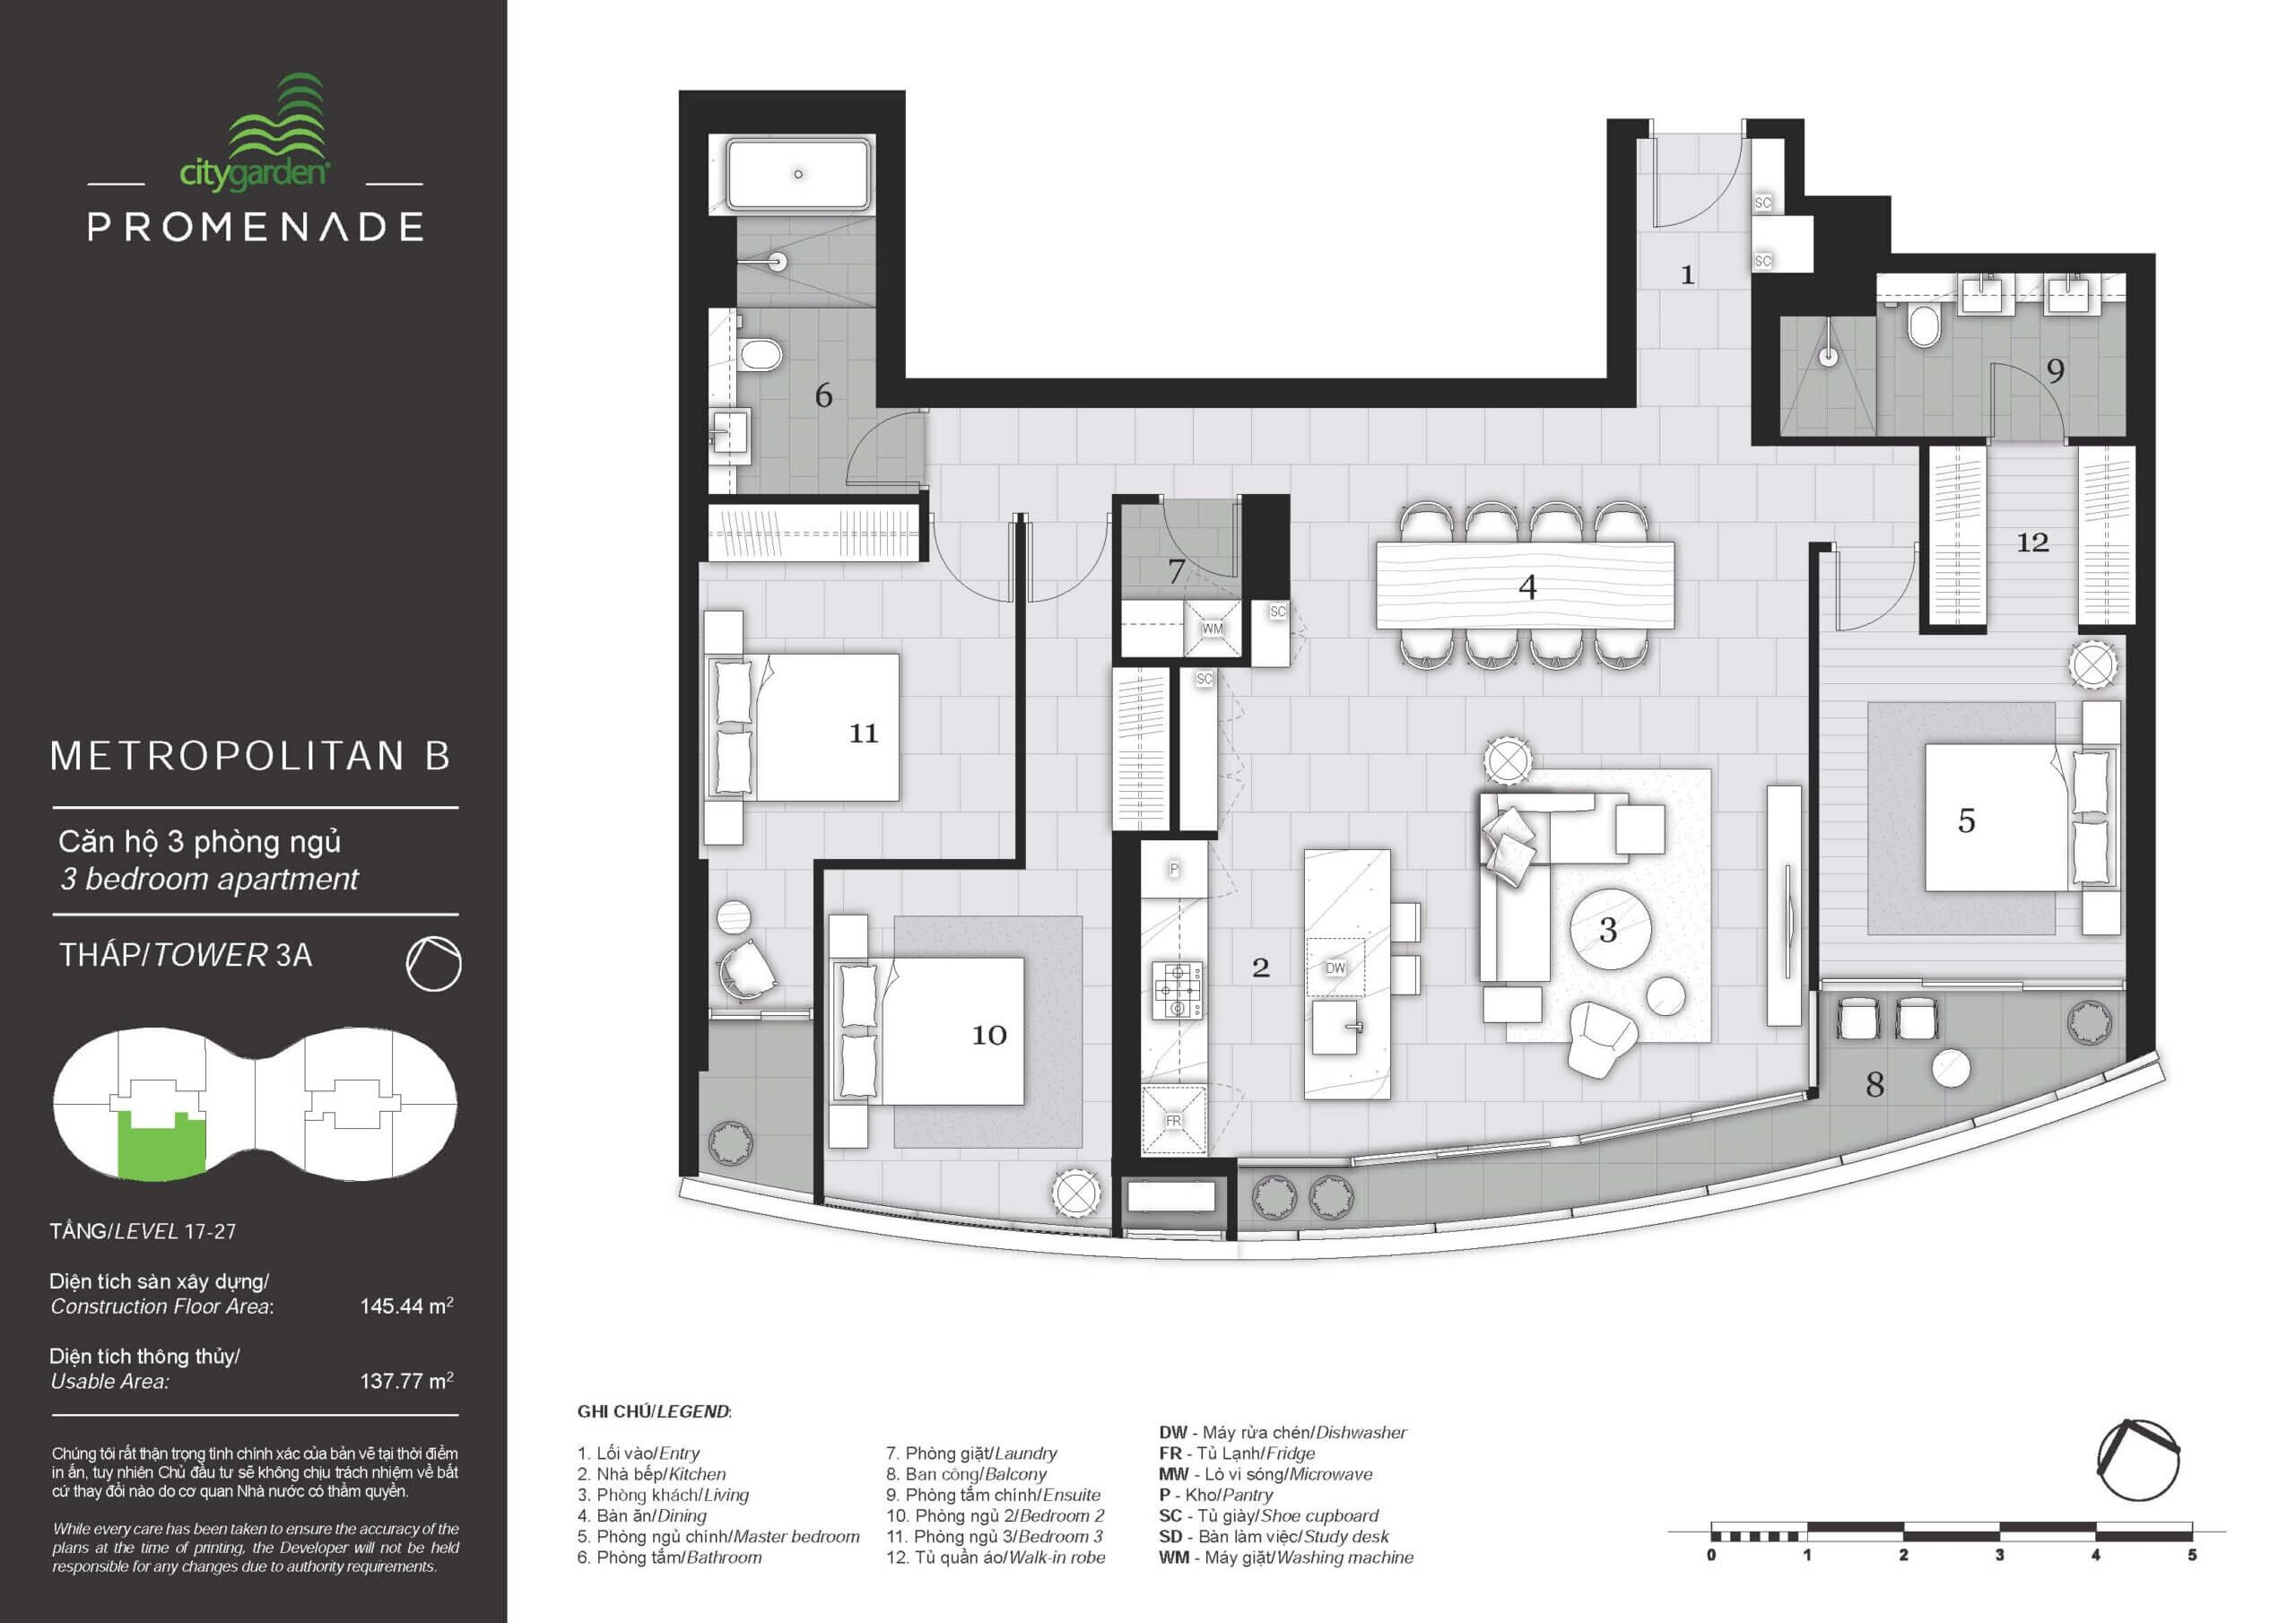 Mặt bằng layout căn hộ 3 phòng ngủ City Garden tháp Promenade 1 Quận Bình Thạnh Metropolitian B